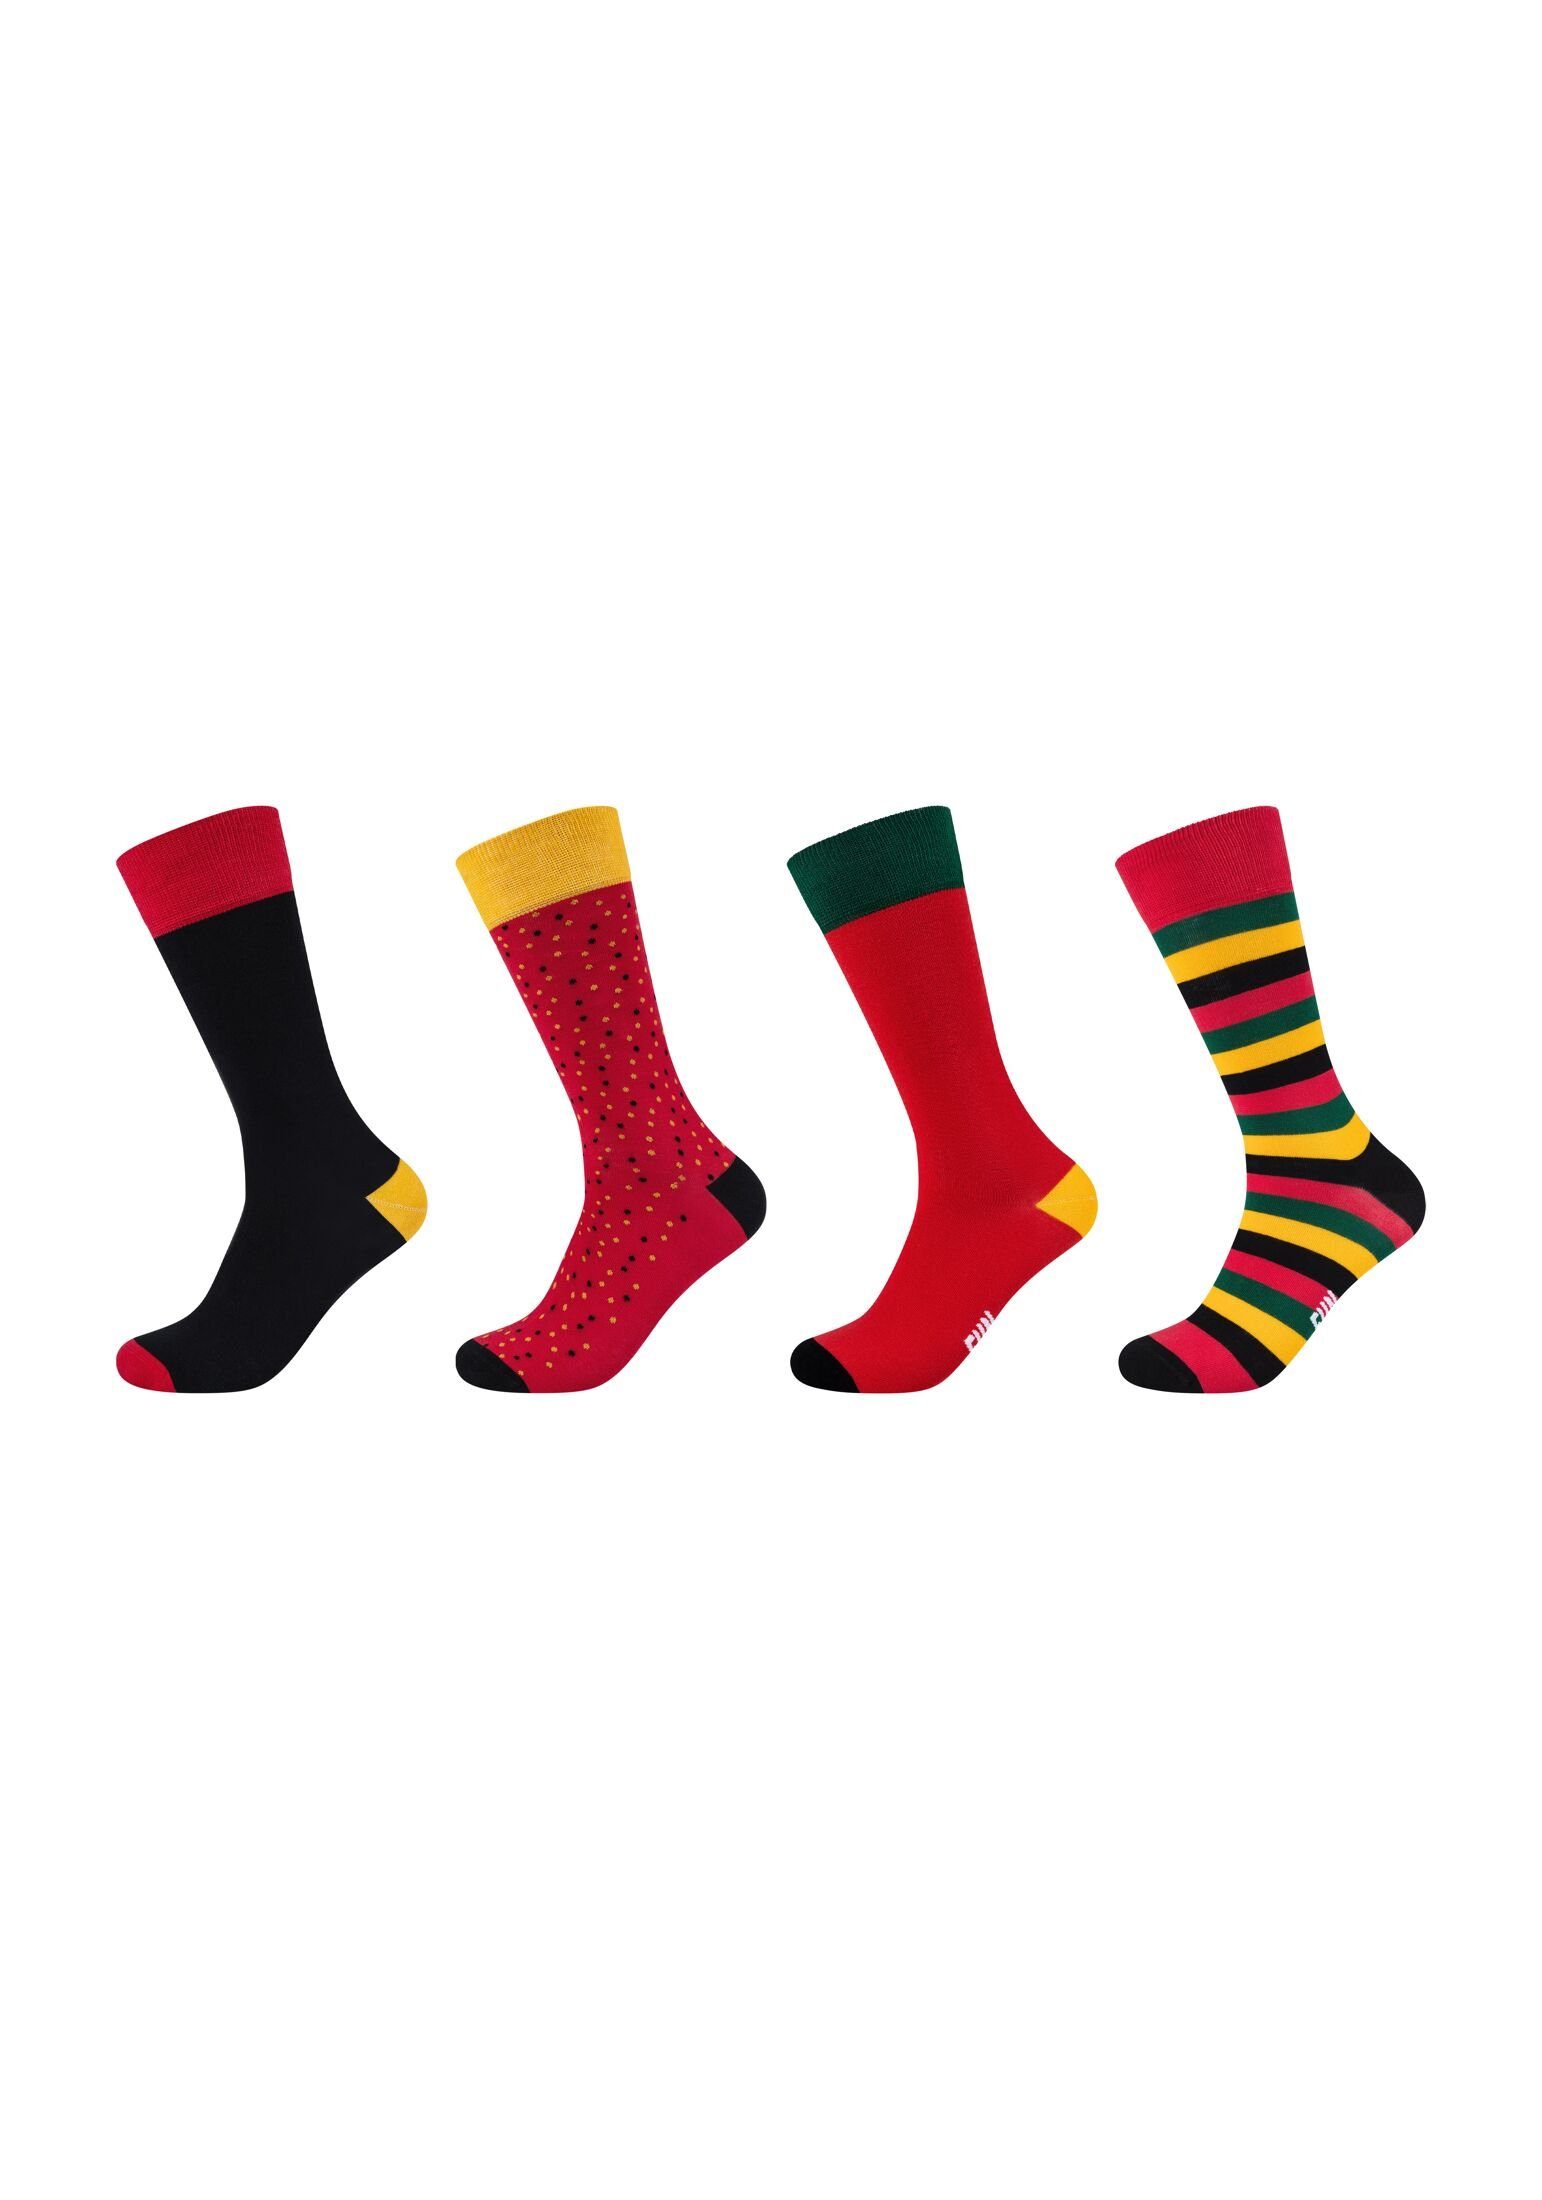 Fun Socks Socken Socken 4er red Pack aurora